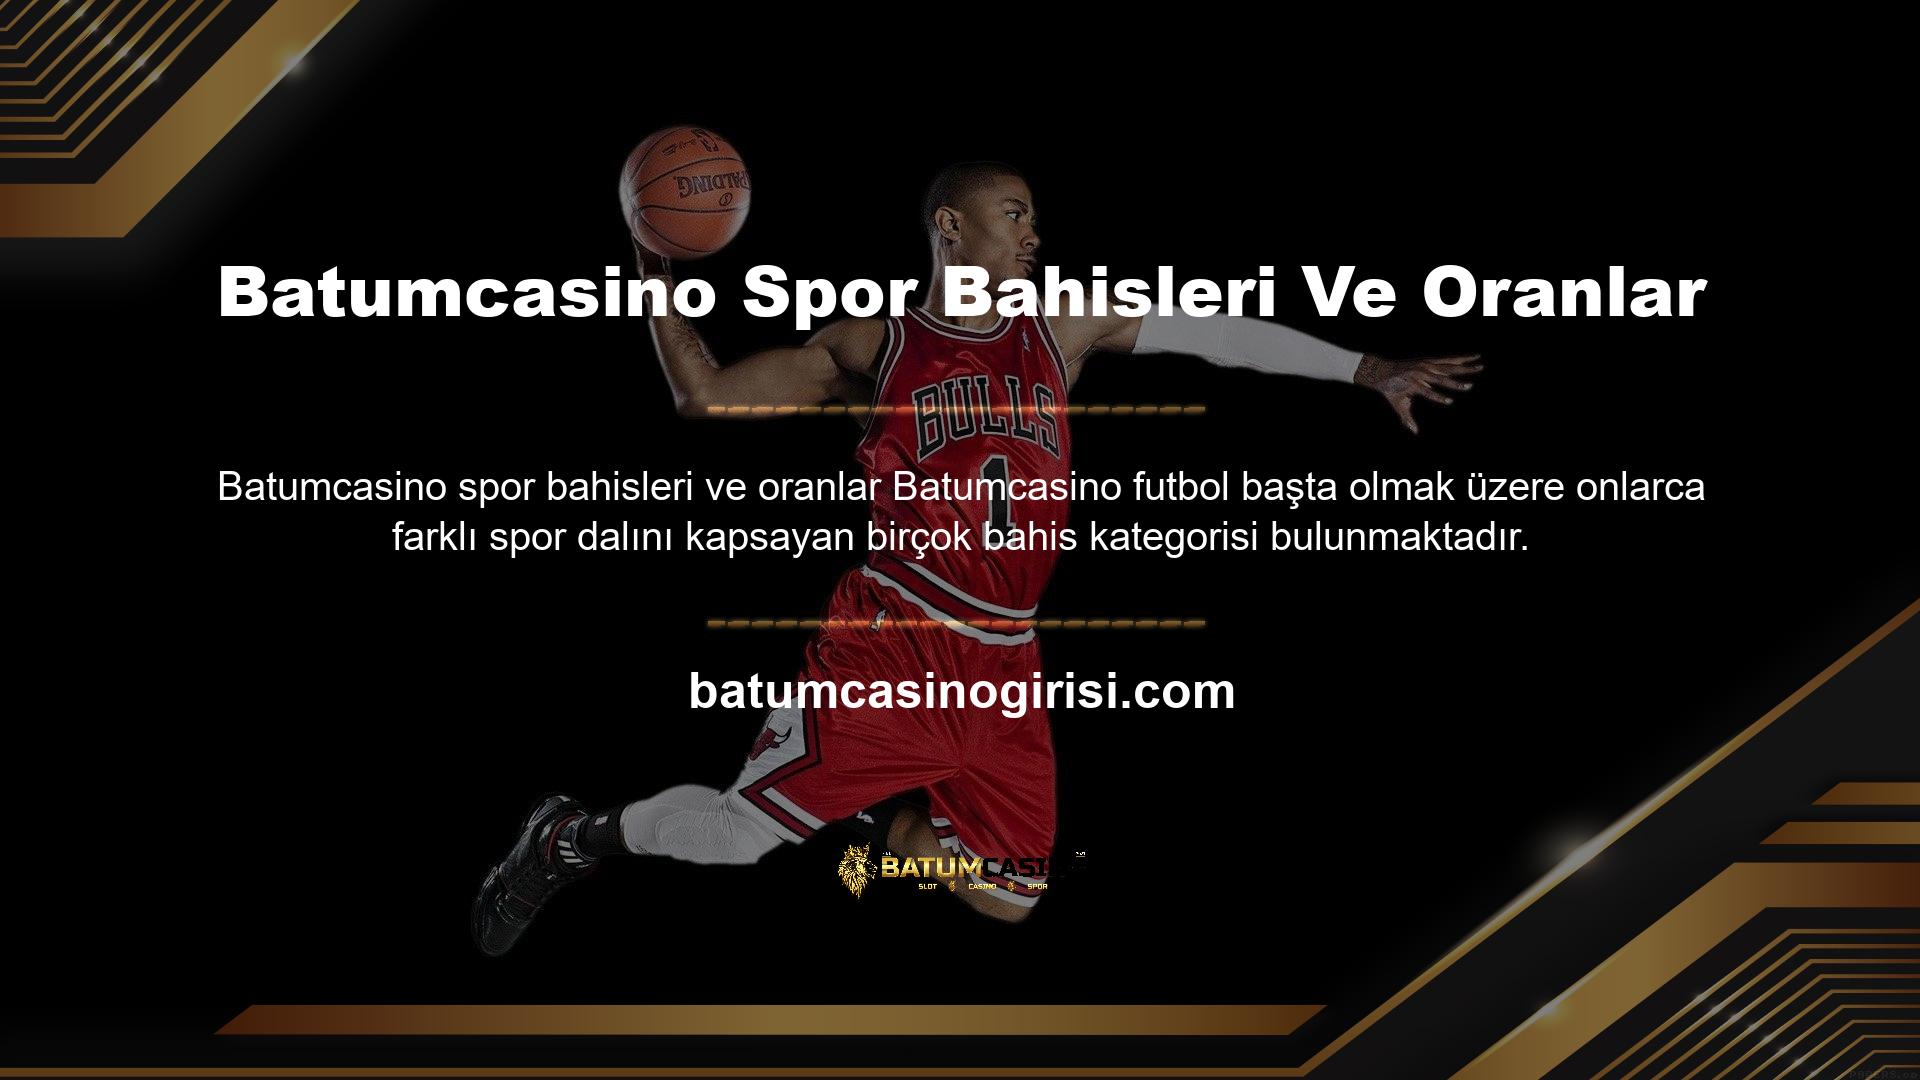 Basketbol, ​​tenis, hentbol, ​​beyzbol, voleybol ve buz hokeyi başta olmak üzere dünyanın ve Türkiye'nin en ünlü oyunlarına bahis yapma fırsatını sizlere sunuyoruz